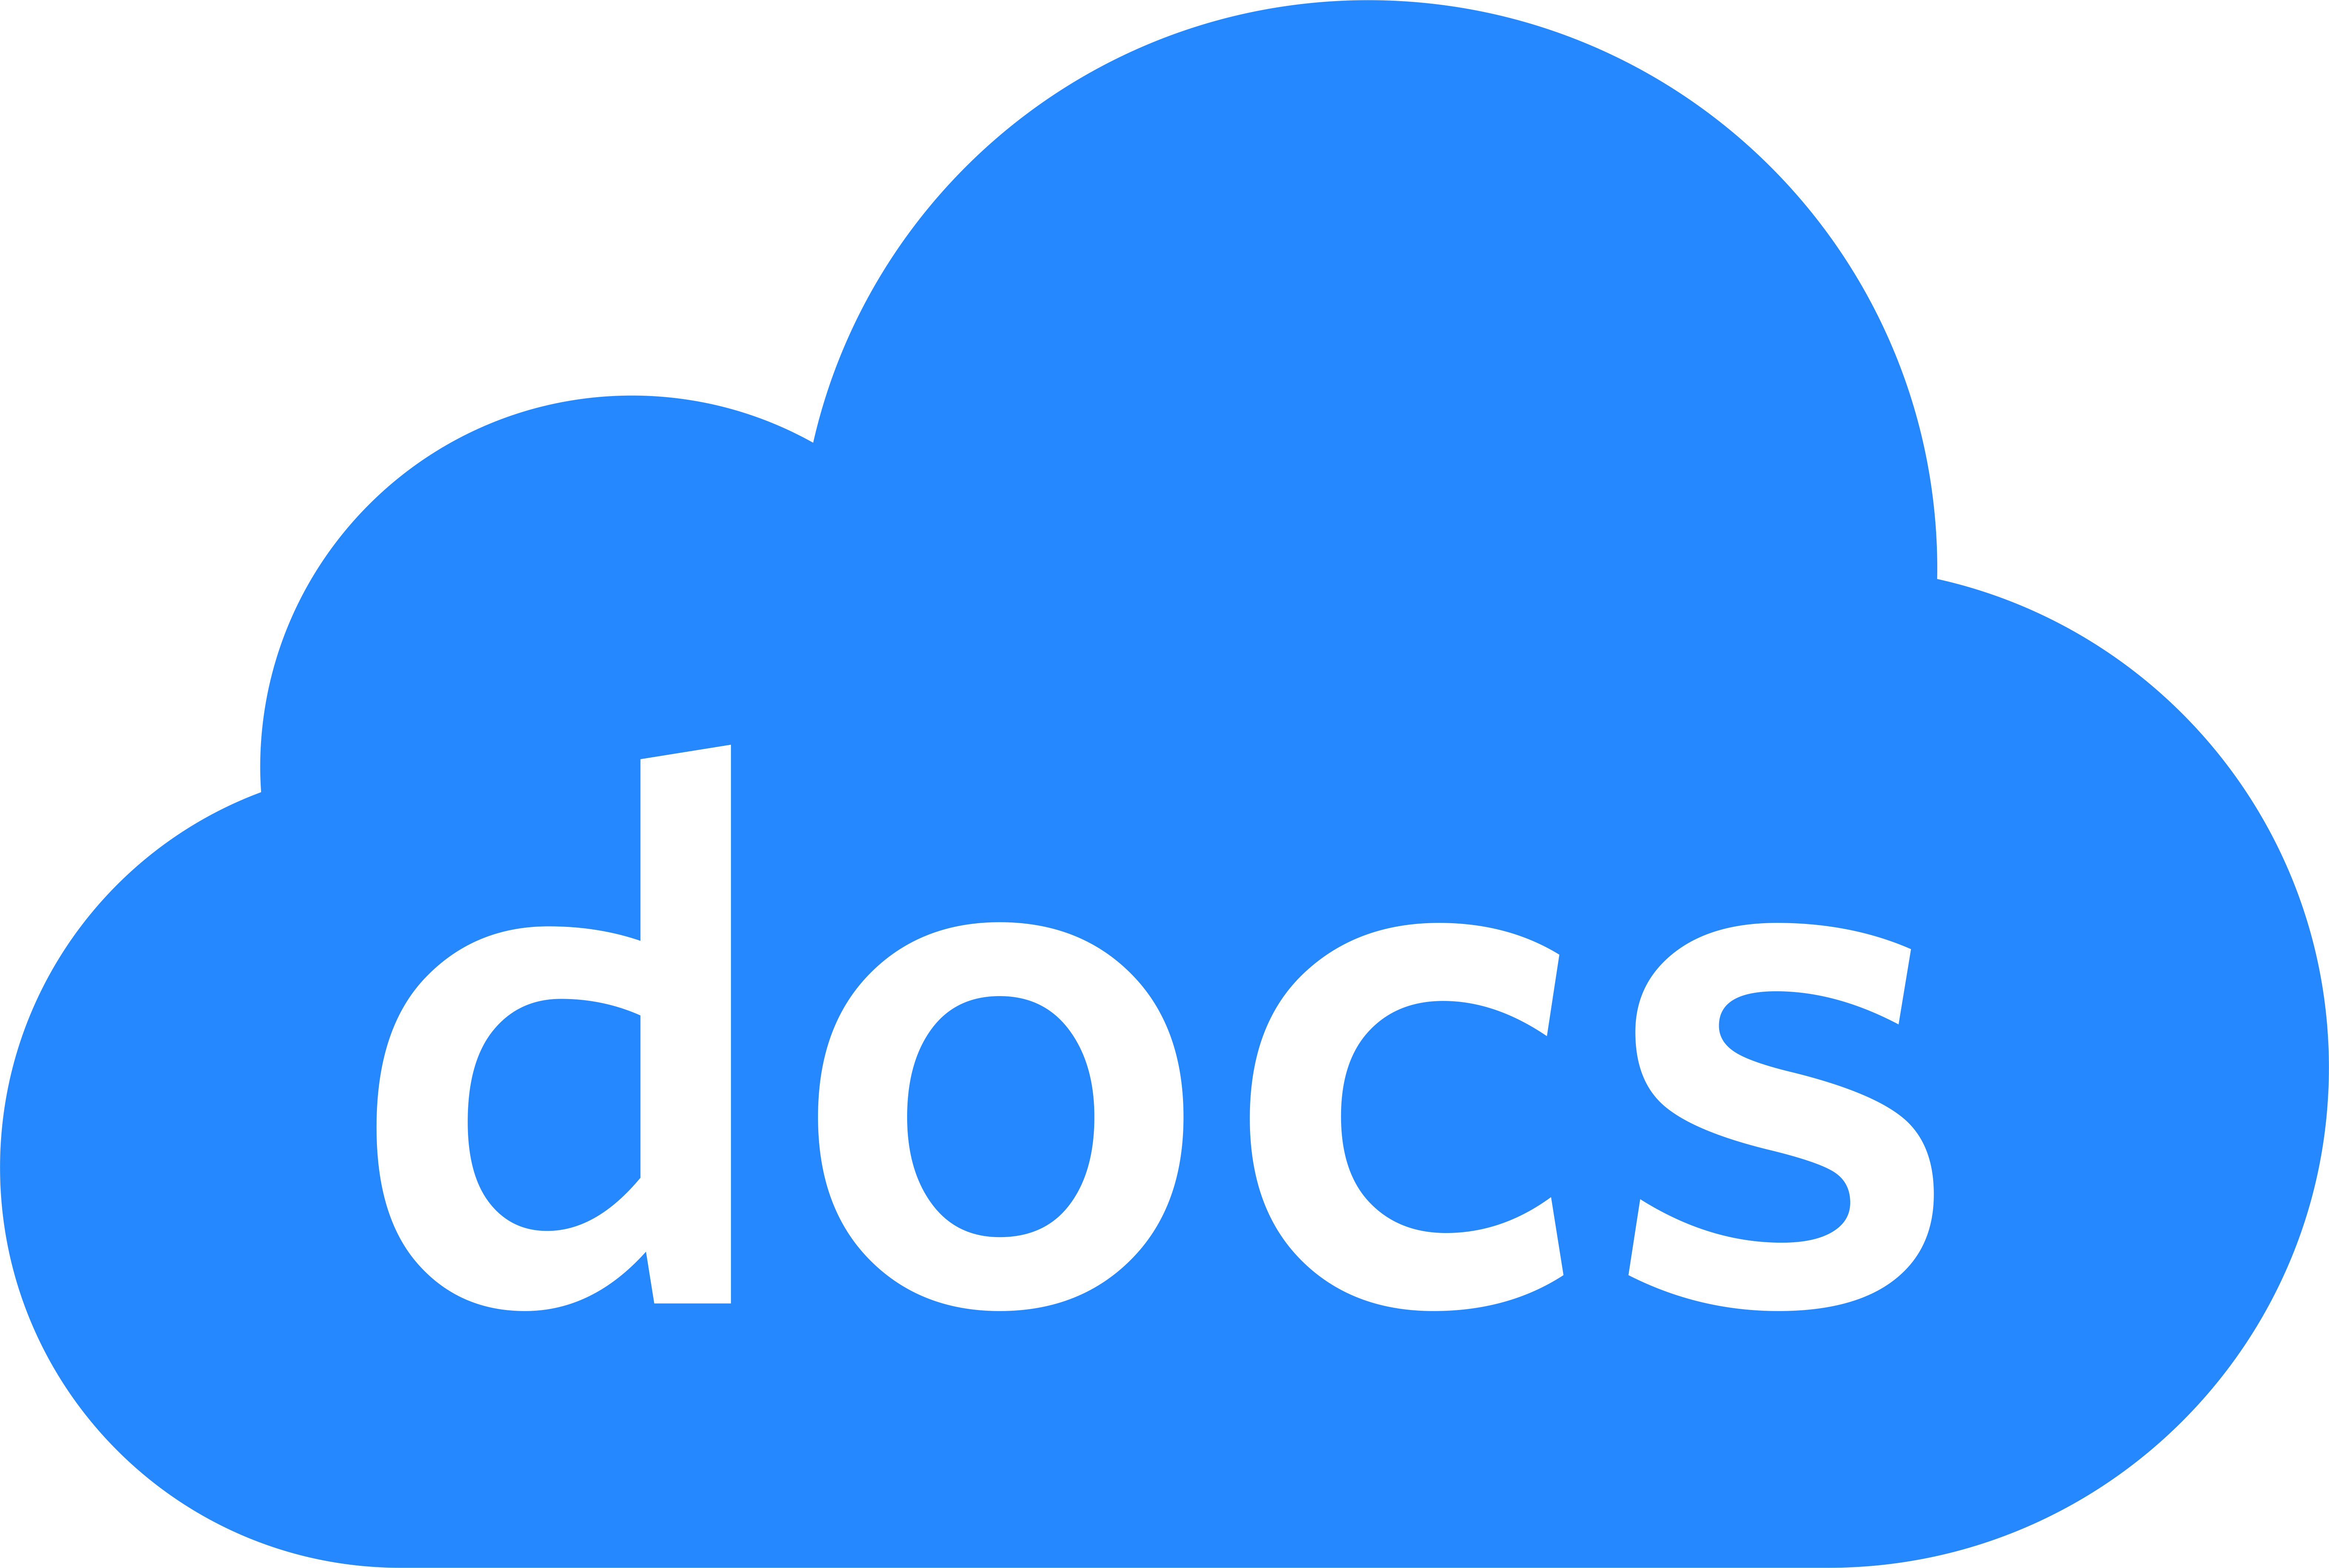 Clouddocs